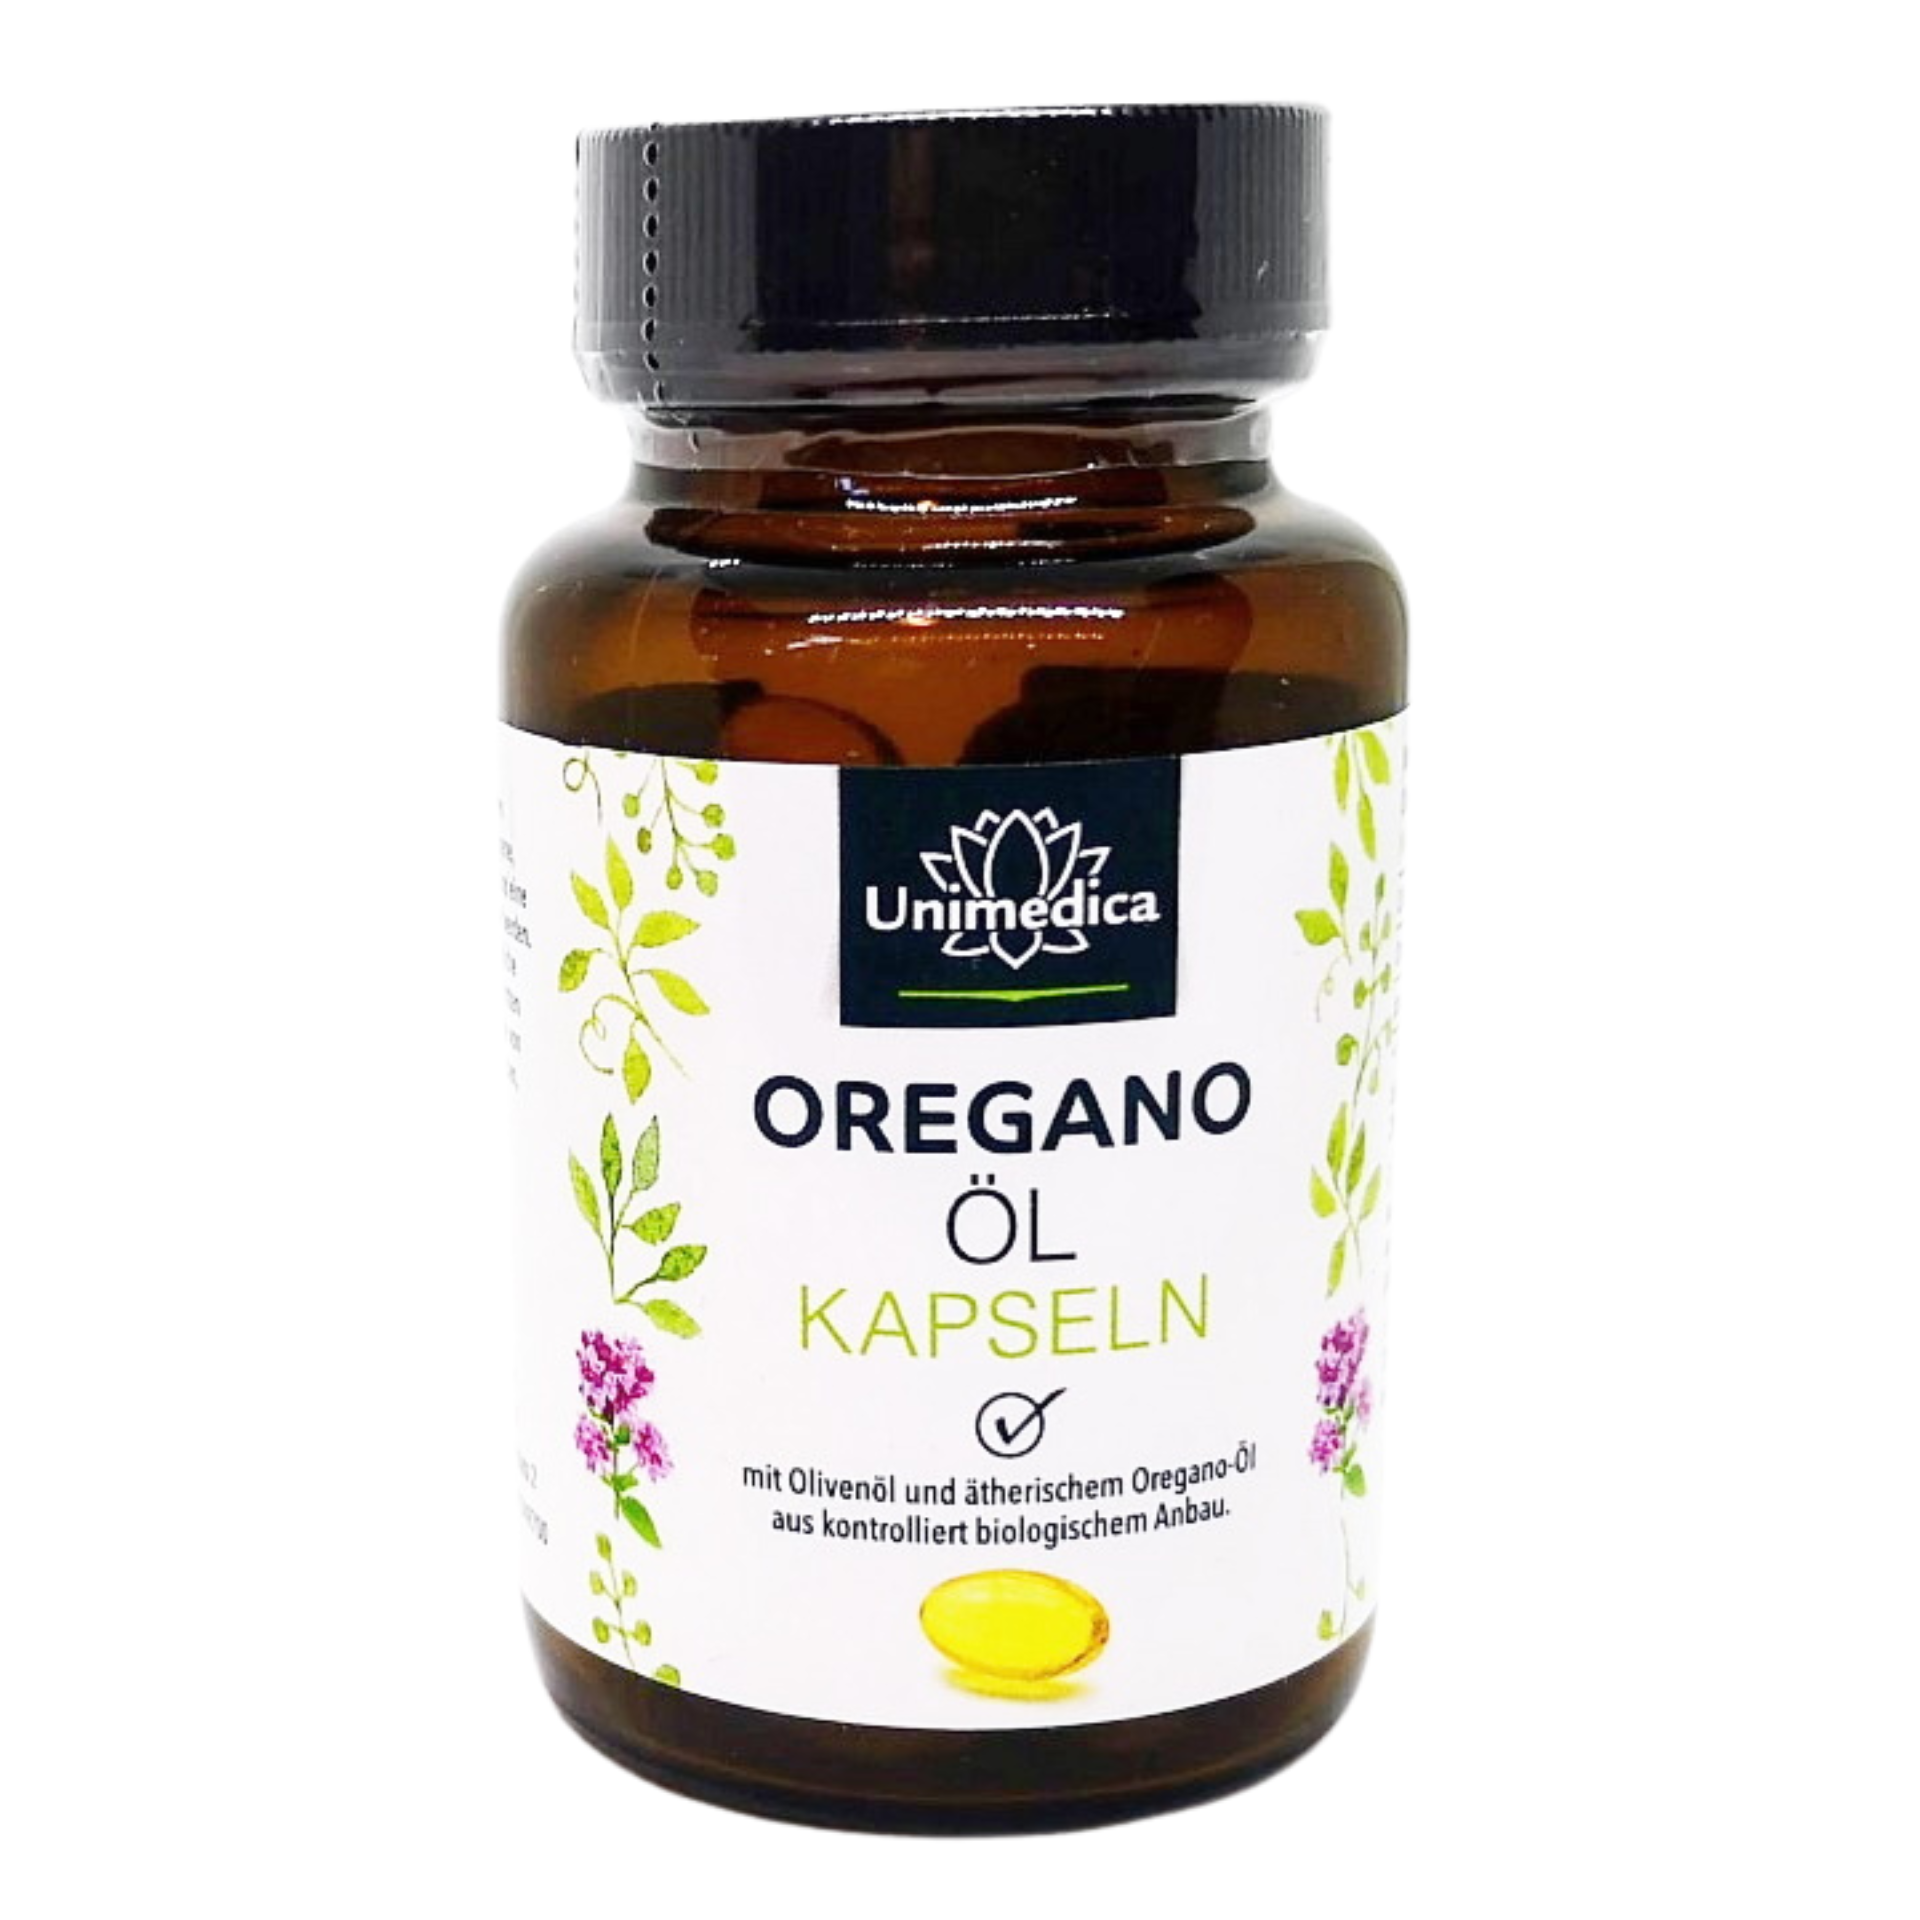 Nahrungsergänzungsmittel mit ätherischem Bio Oregano-Öl und Olivenöl aus kontrolliert biologischem Anbau. Immunsystem Kornkammer Natur Unimedica